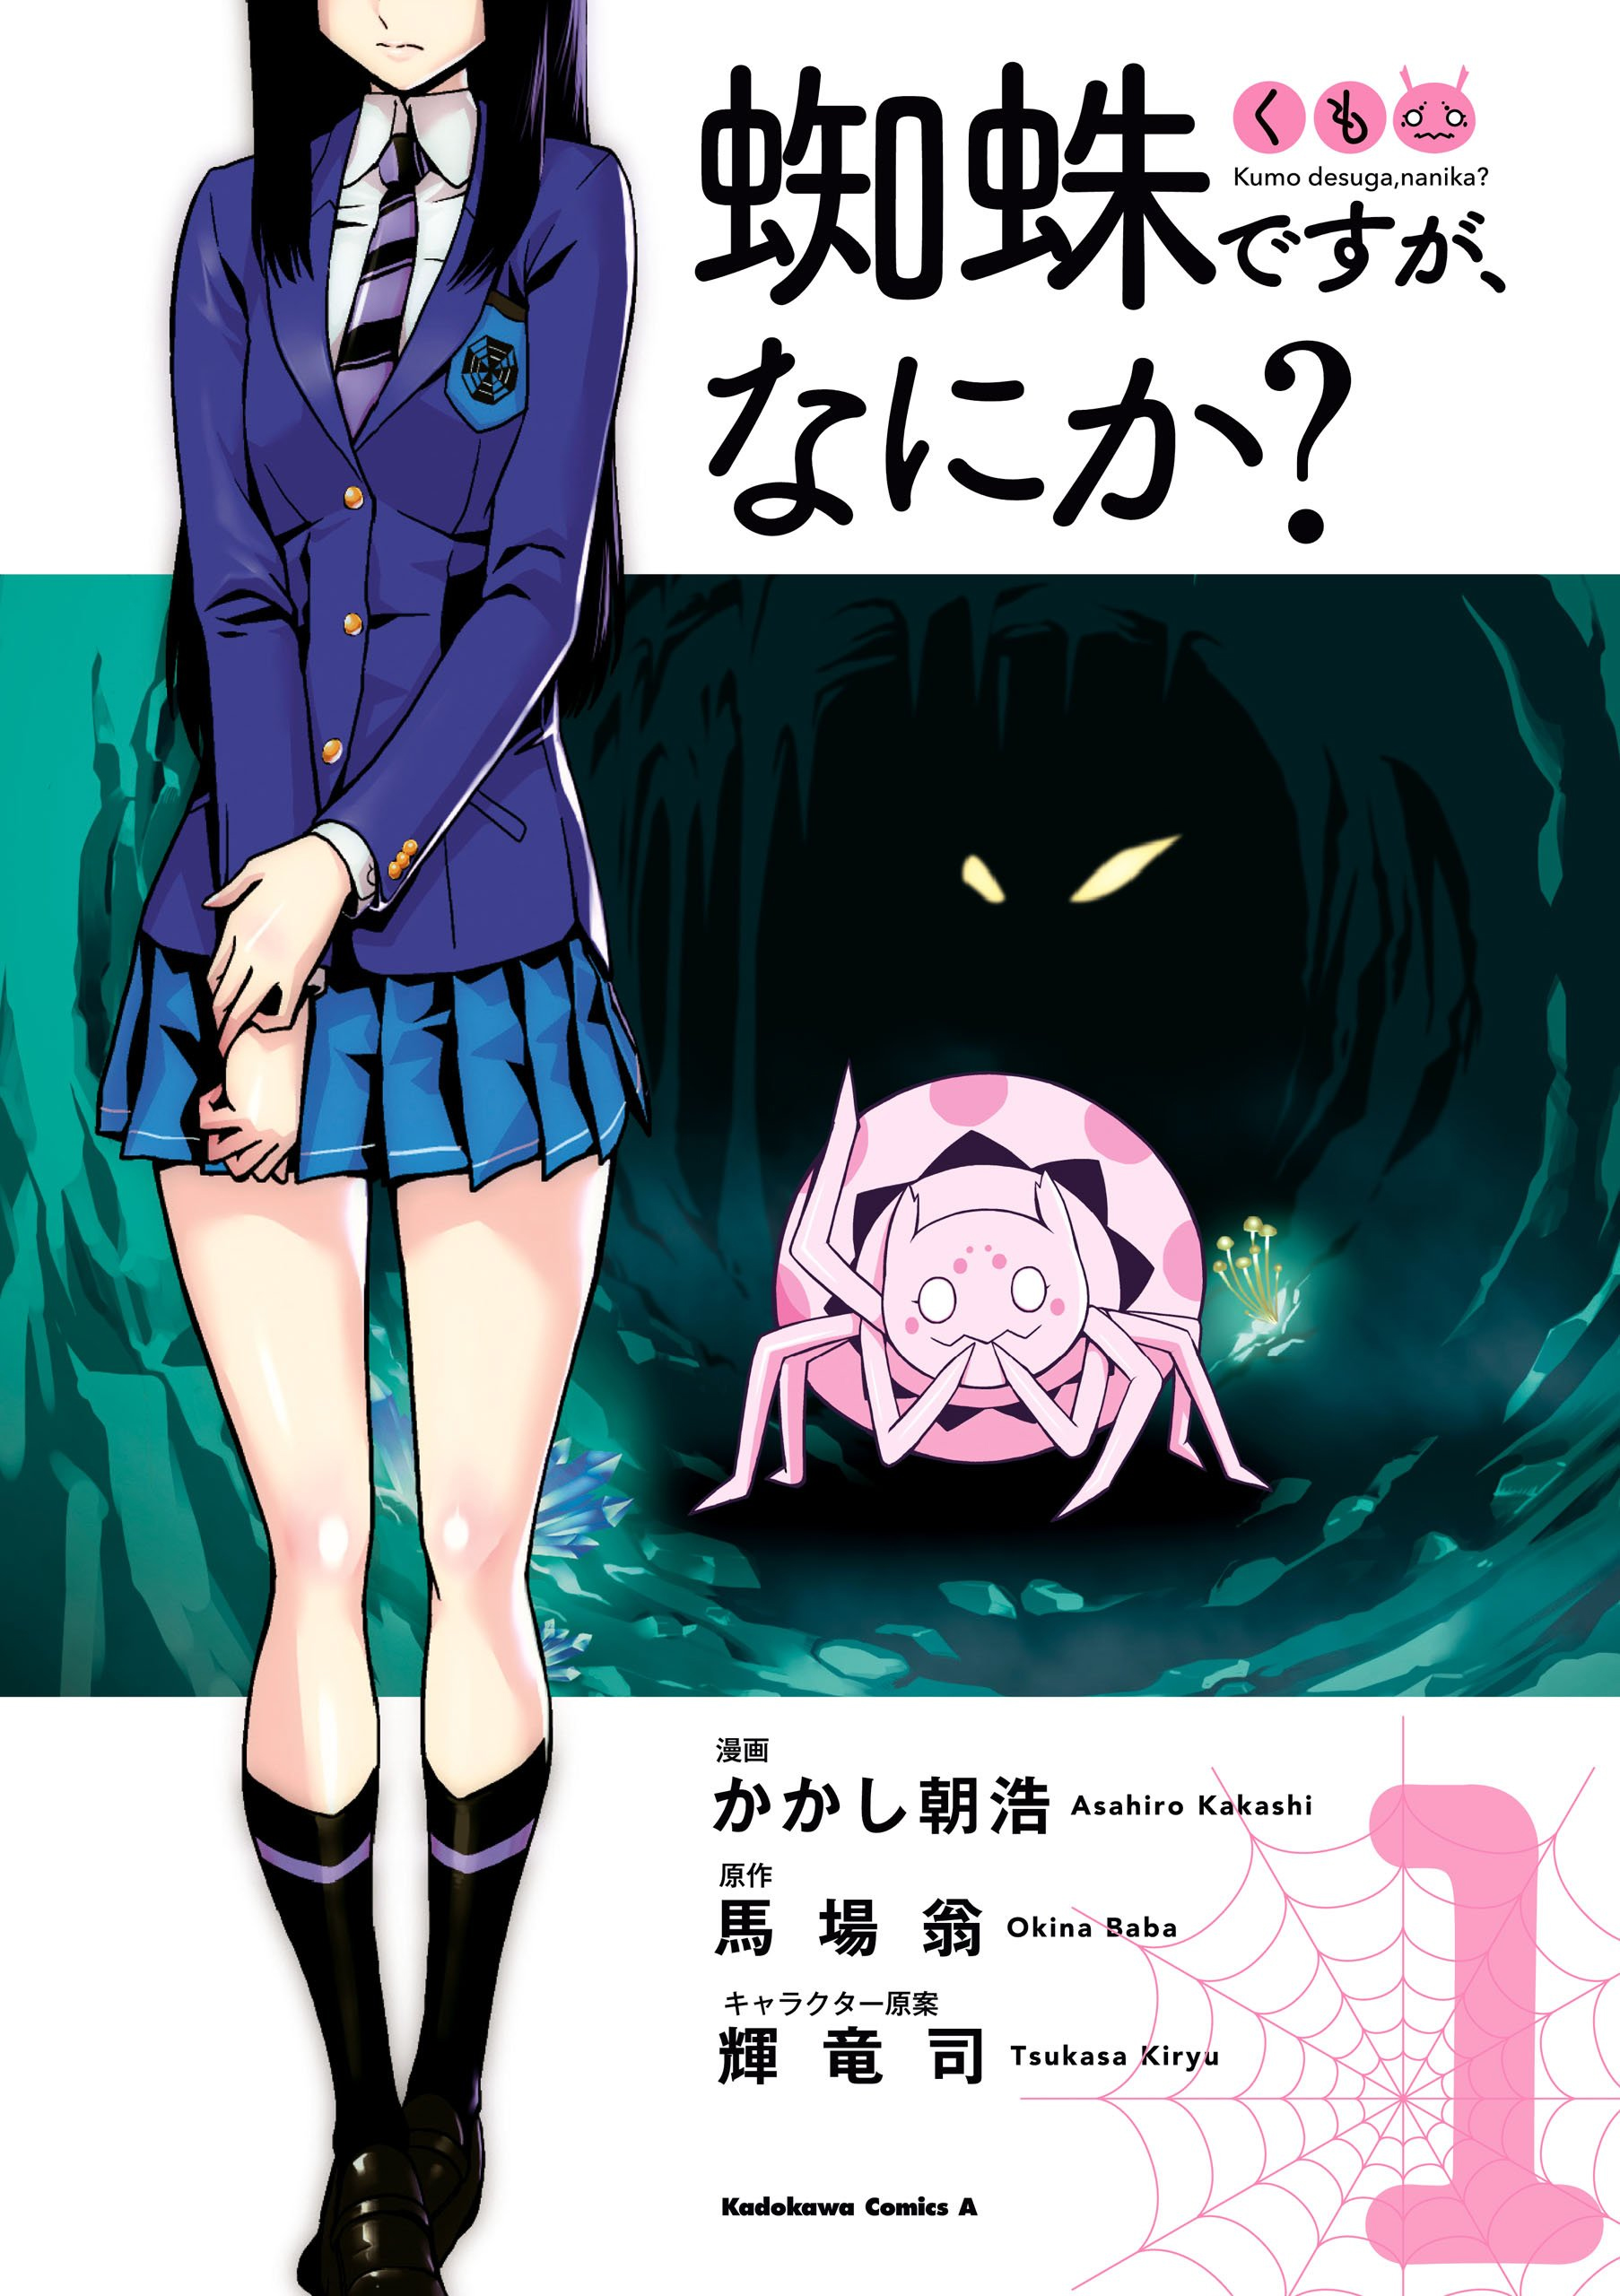 Manga Volume 1 | Kumo Desu ga, Nani ka? Wikia | FANDOM powered by Wikia